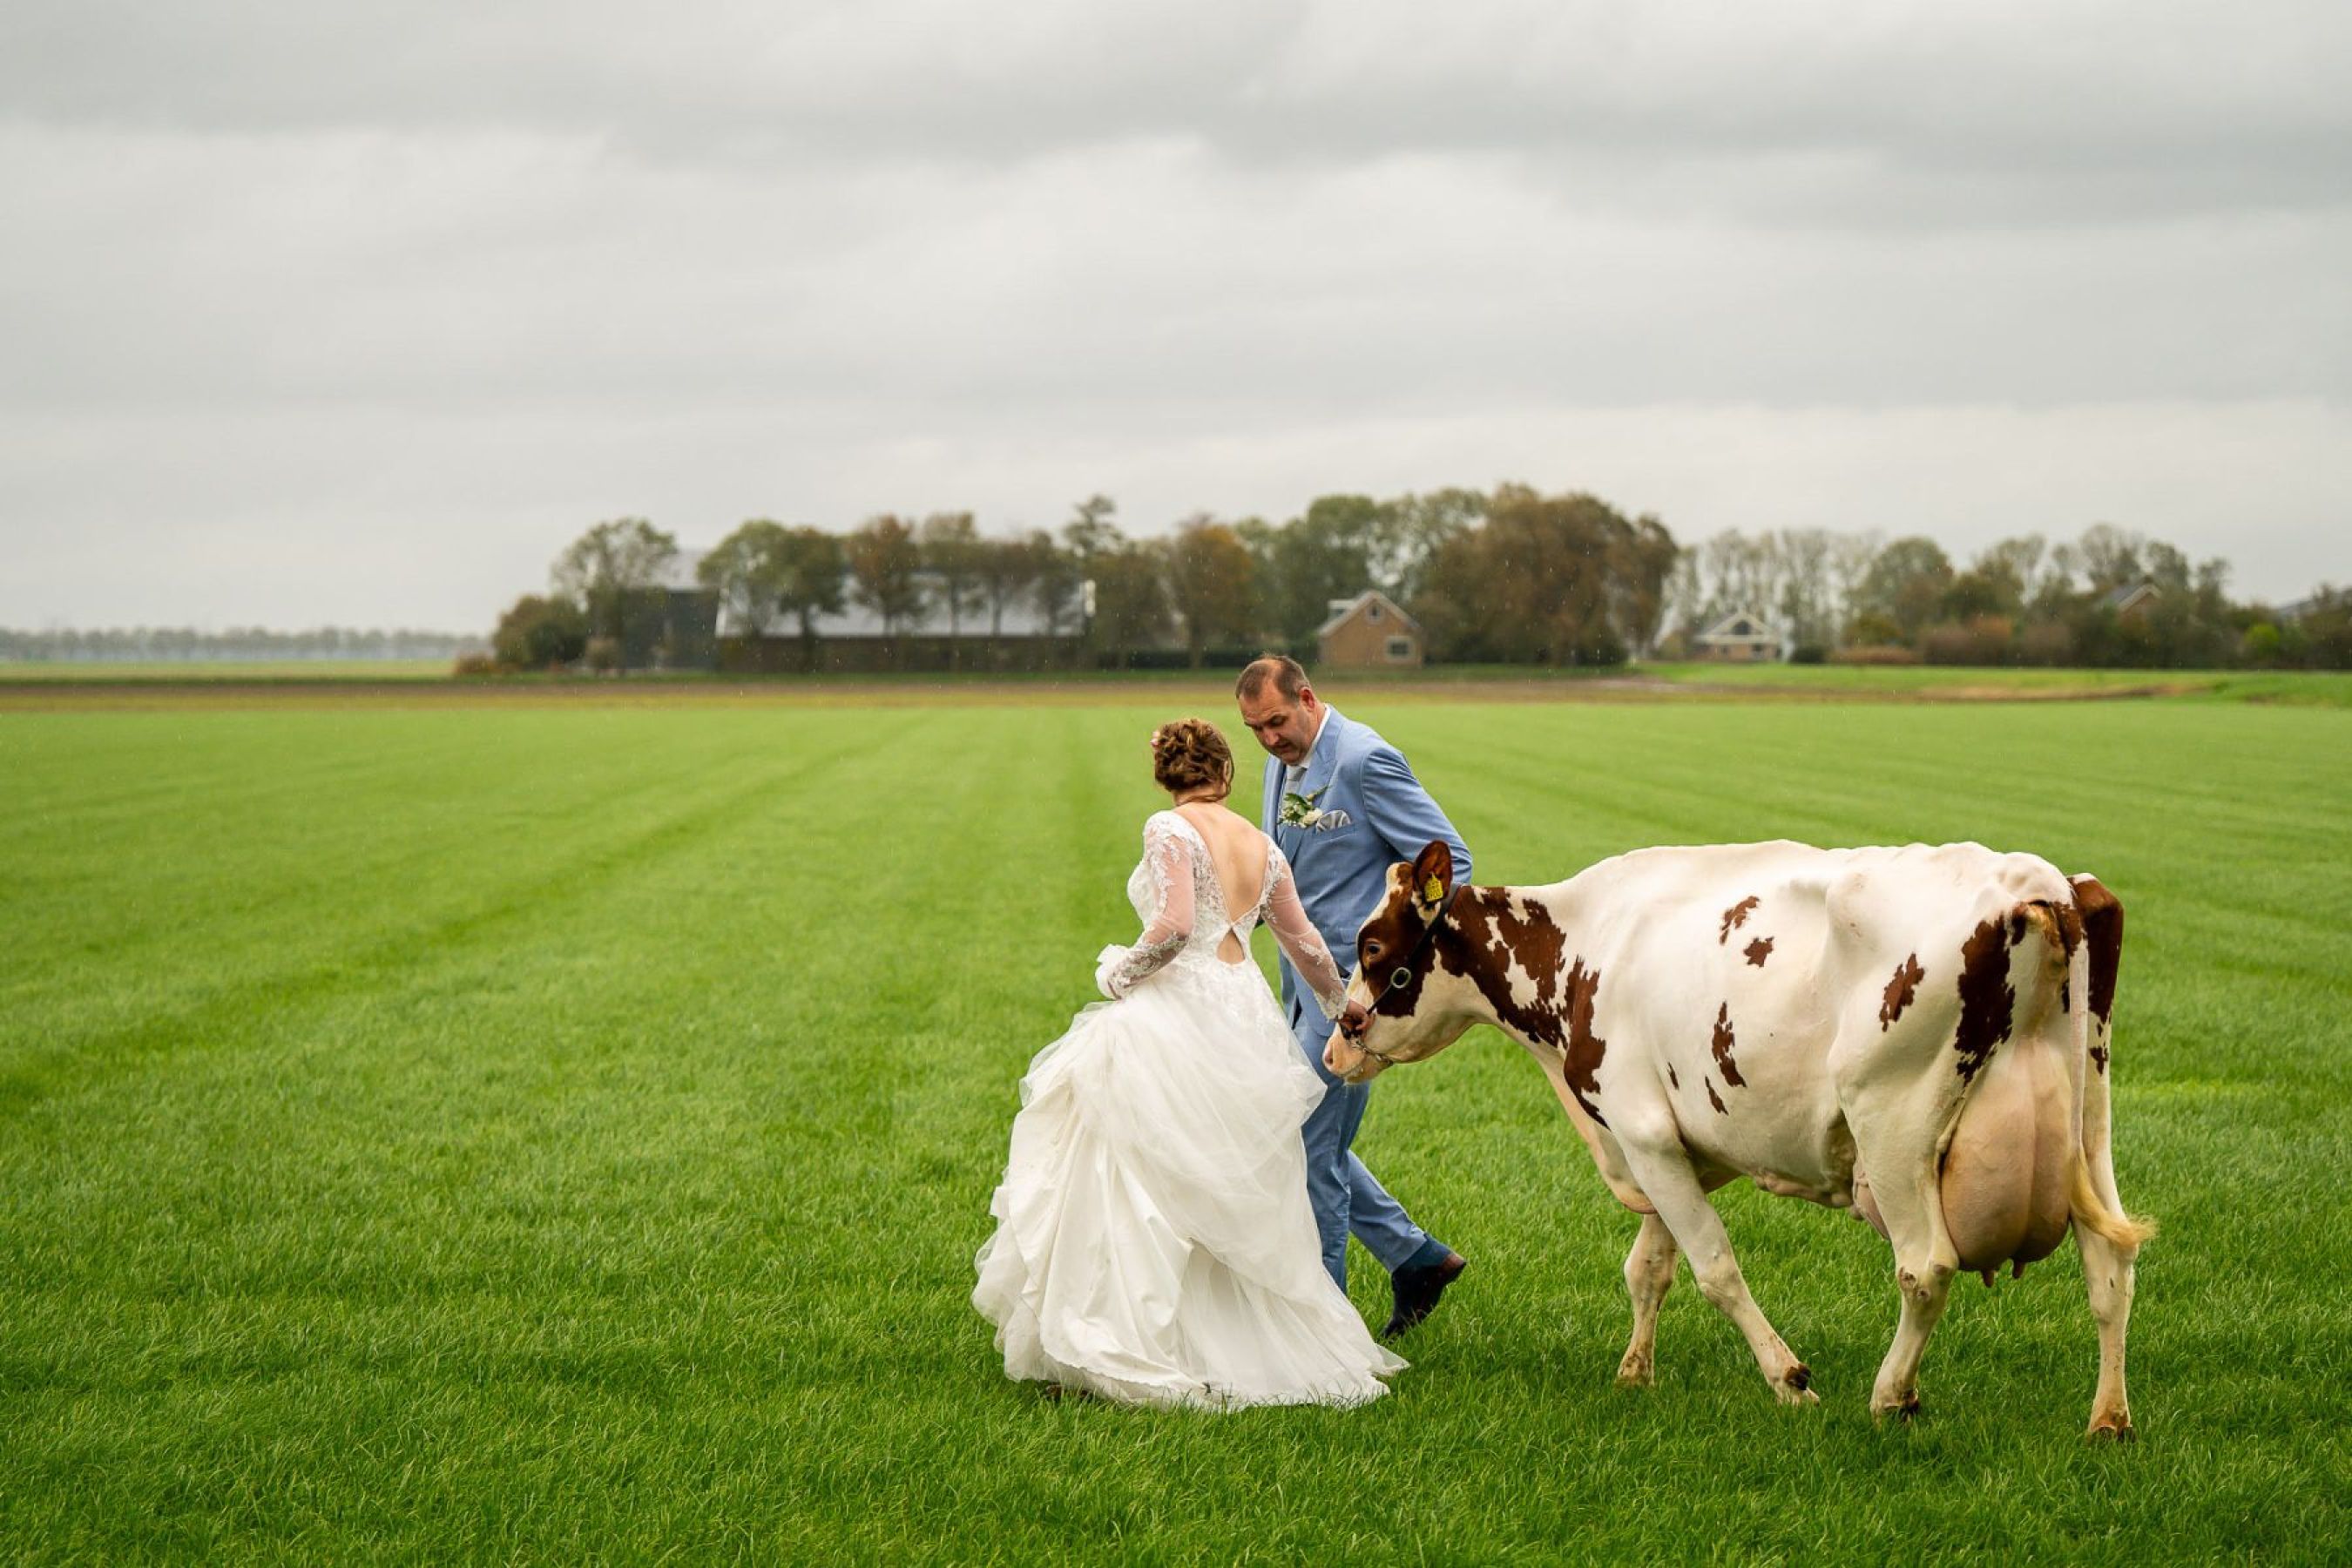 Willem-Jan-Dagmar-Jan-van-de-Maat-Bruidsfotografie-Trouwen-Bruiloft-Trouwreportage-Bruidsreportage-boerderij-paard-koe